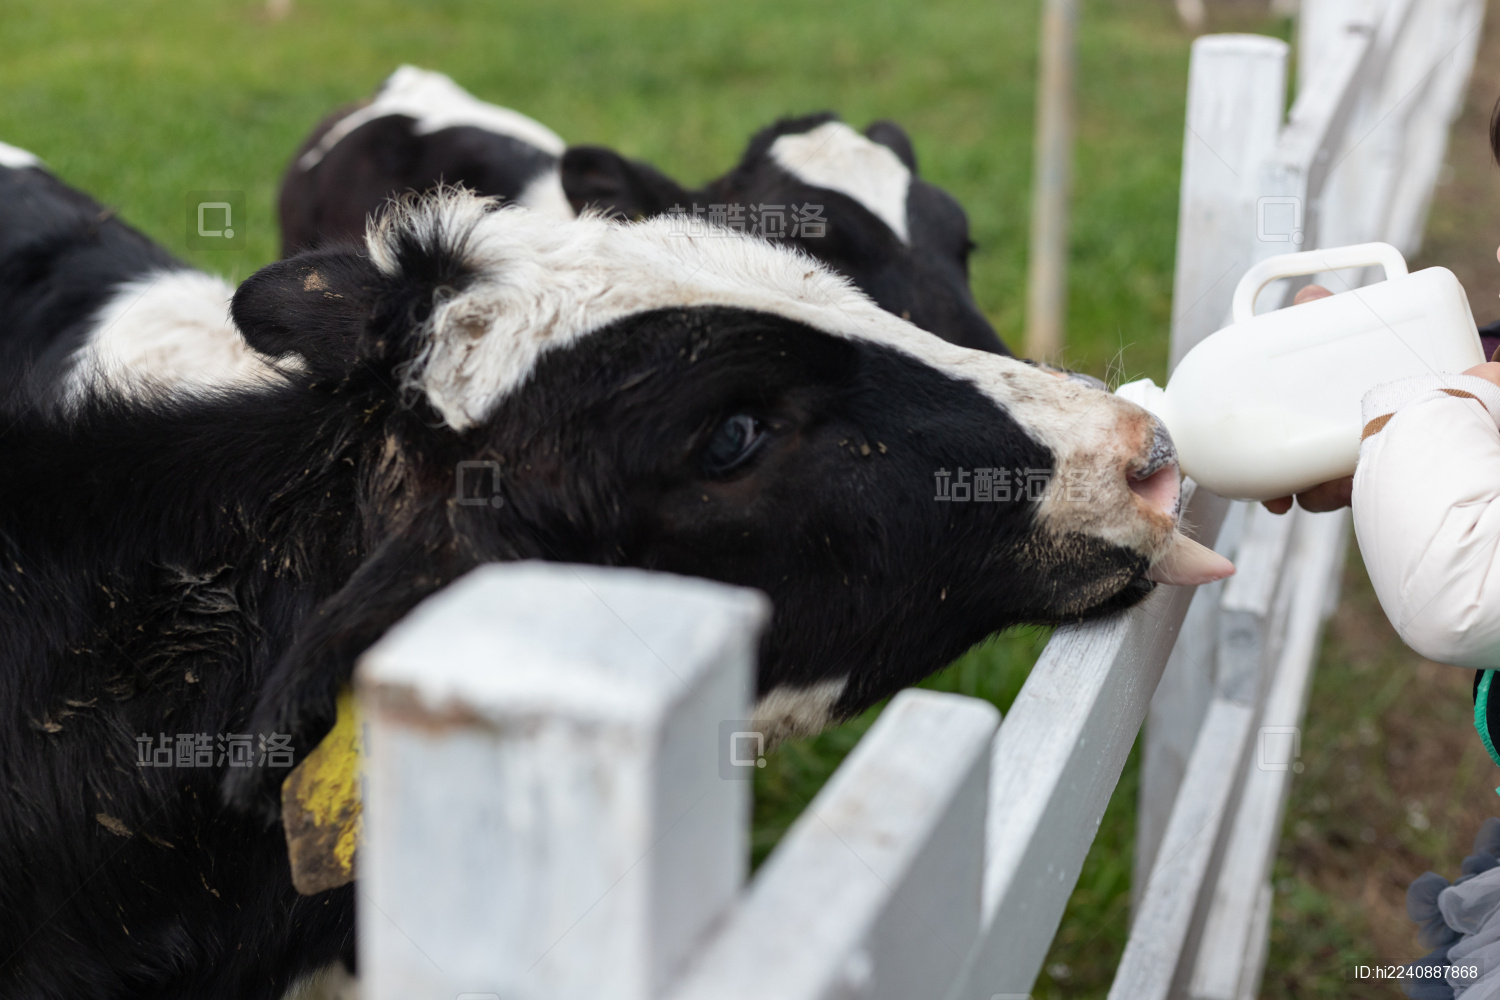 小牛吃奶下午牛春季素材摄影图配图高清摄影大图-千库网